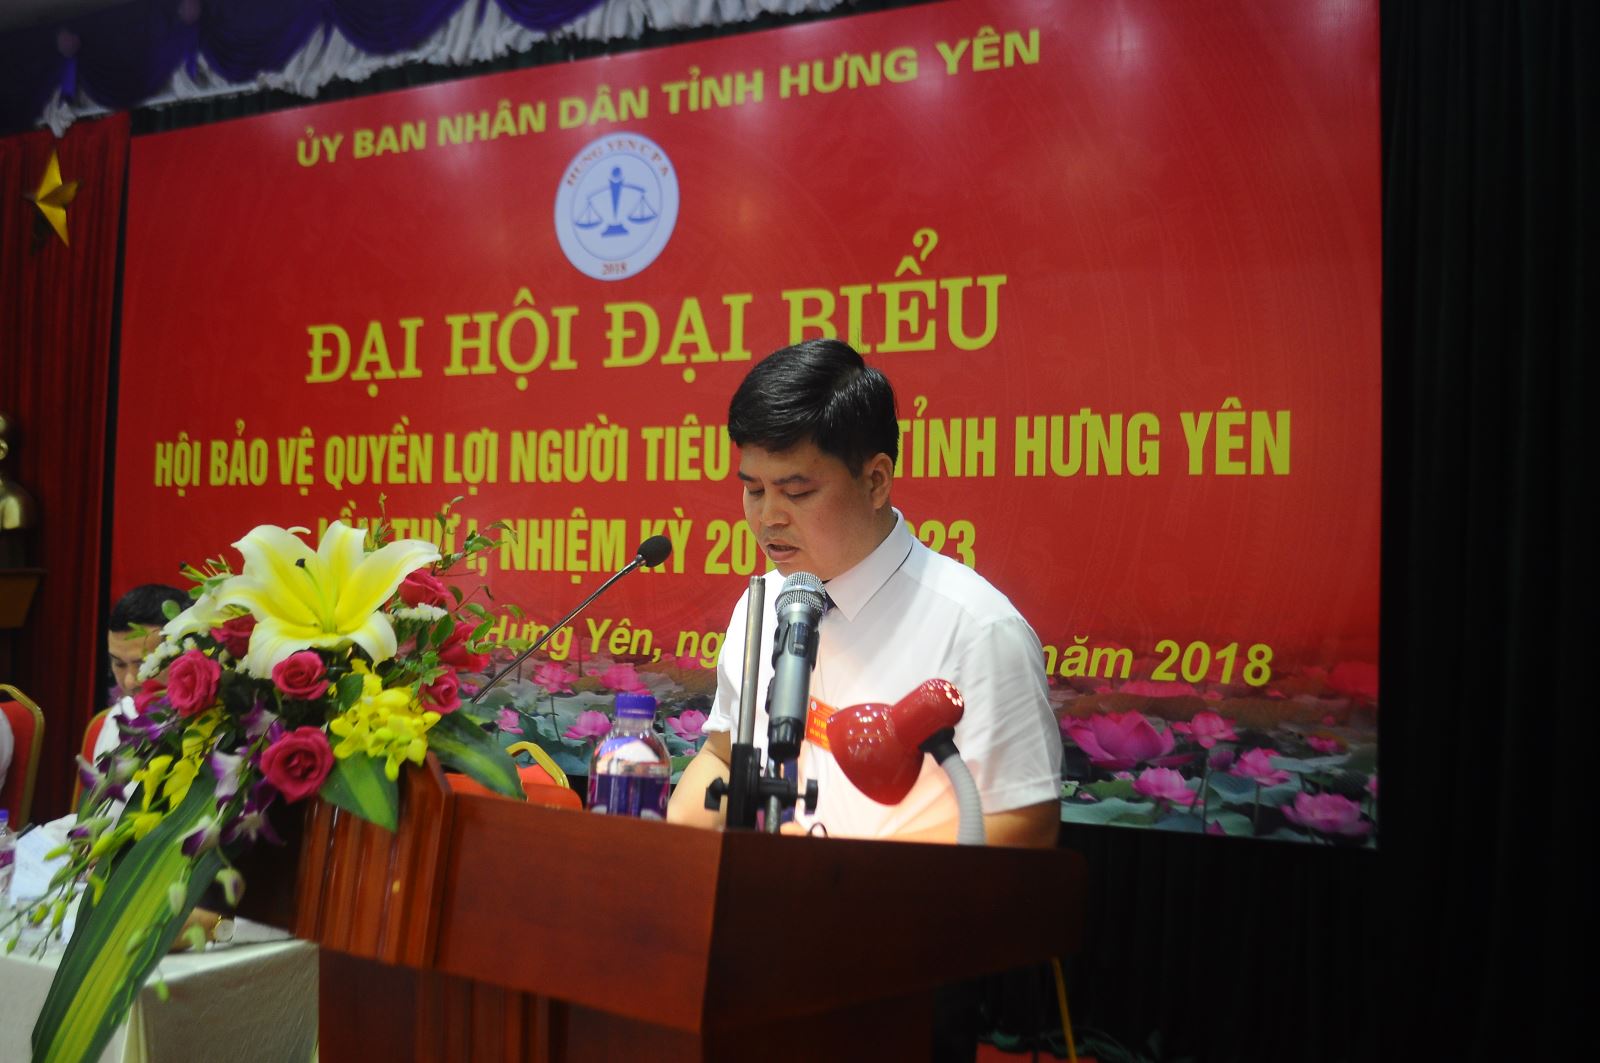 Đại hội Hội Bảo vệ quyền lợi người tiêu dùng tỉnh Hưng Yên lần thứ I, nhiệm kỳ 2018 -2023